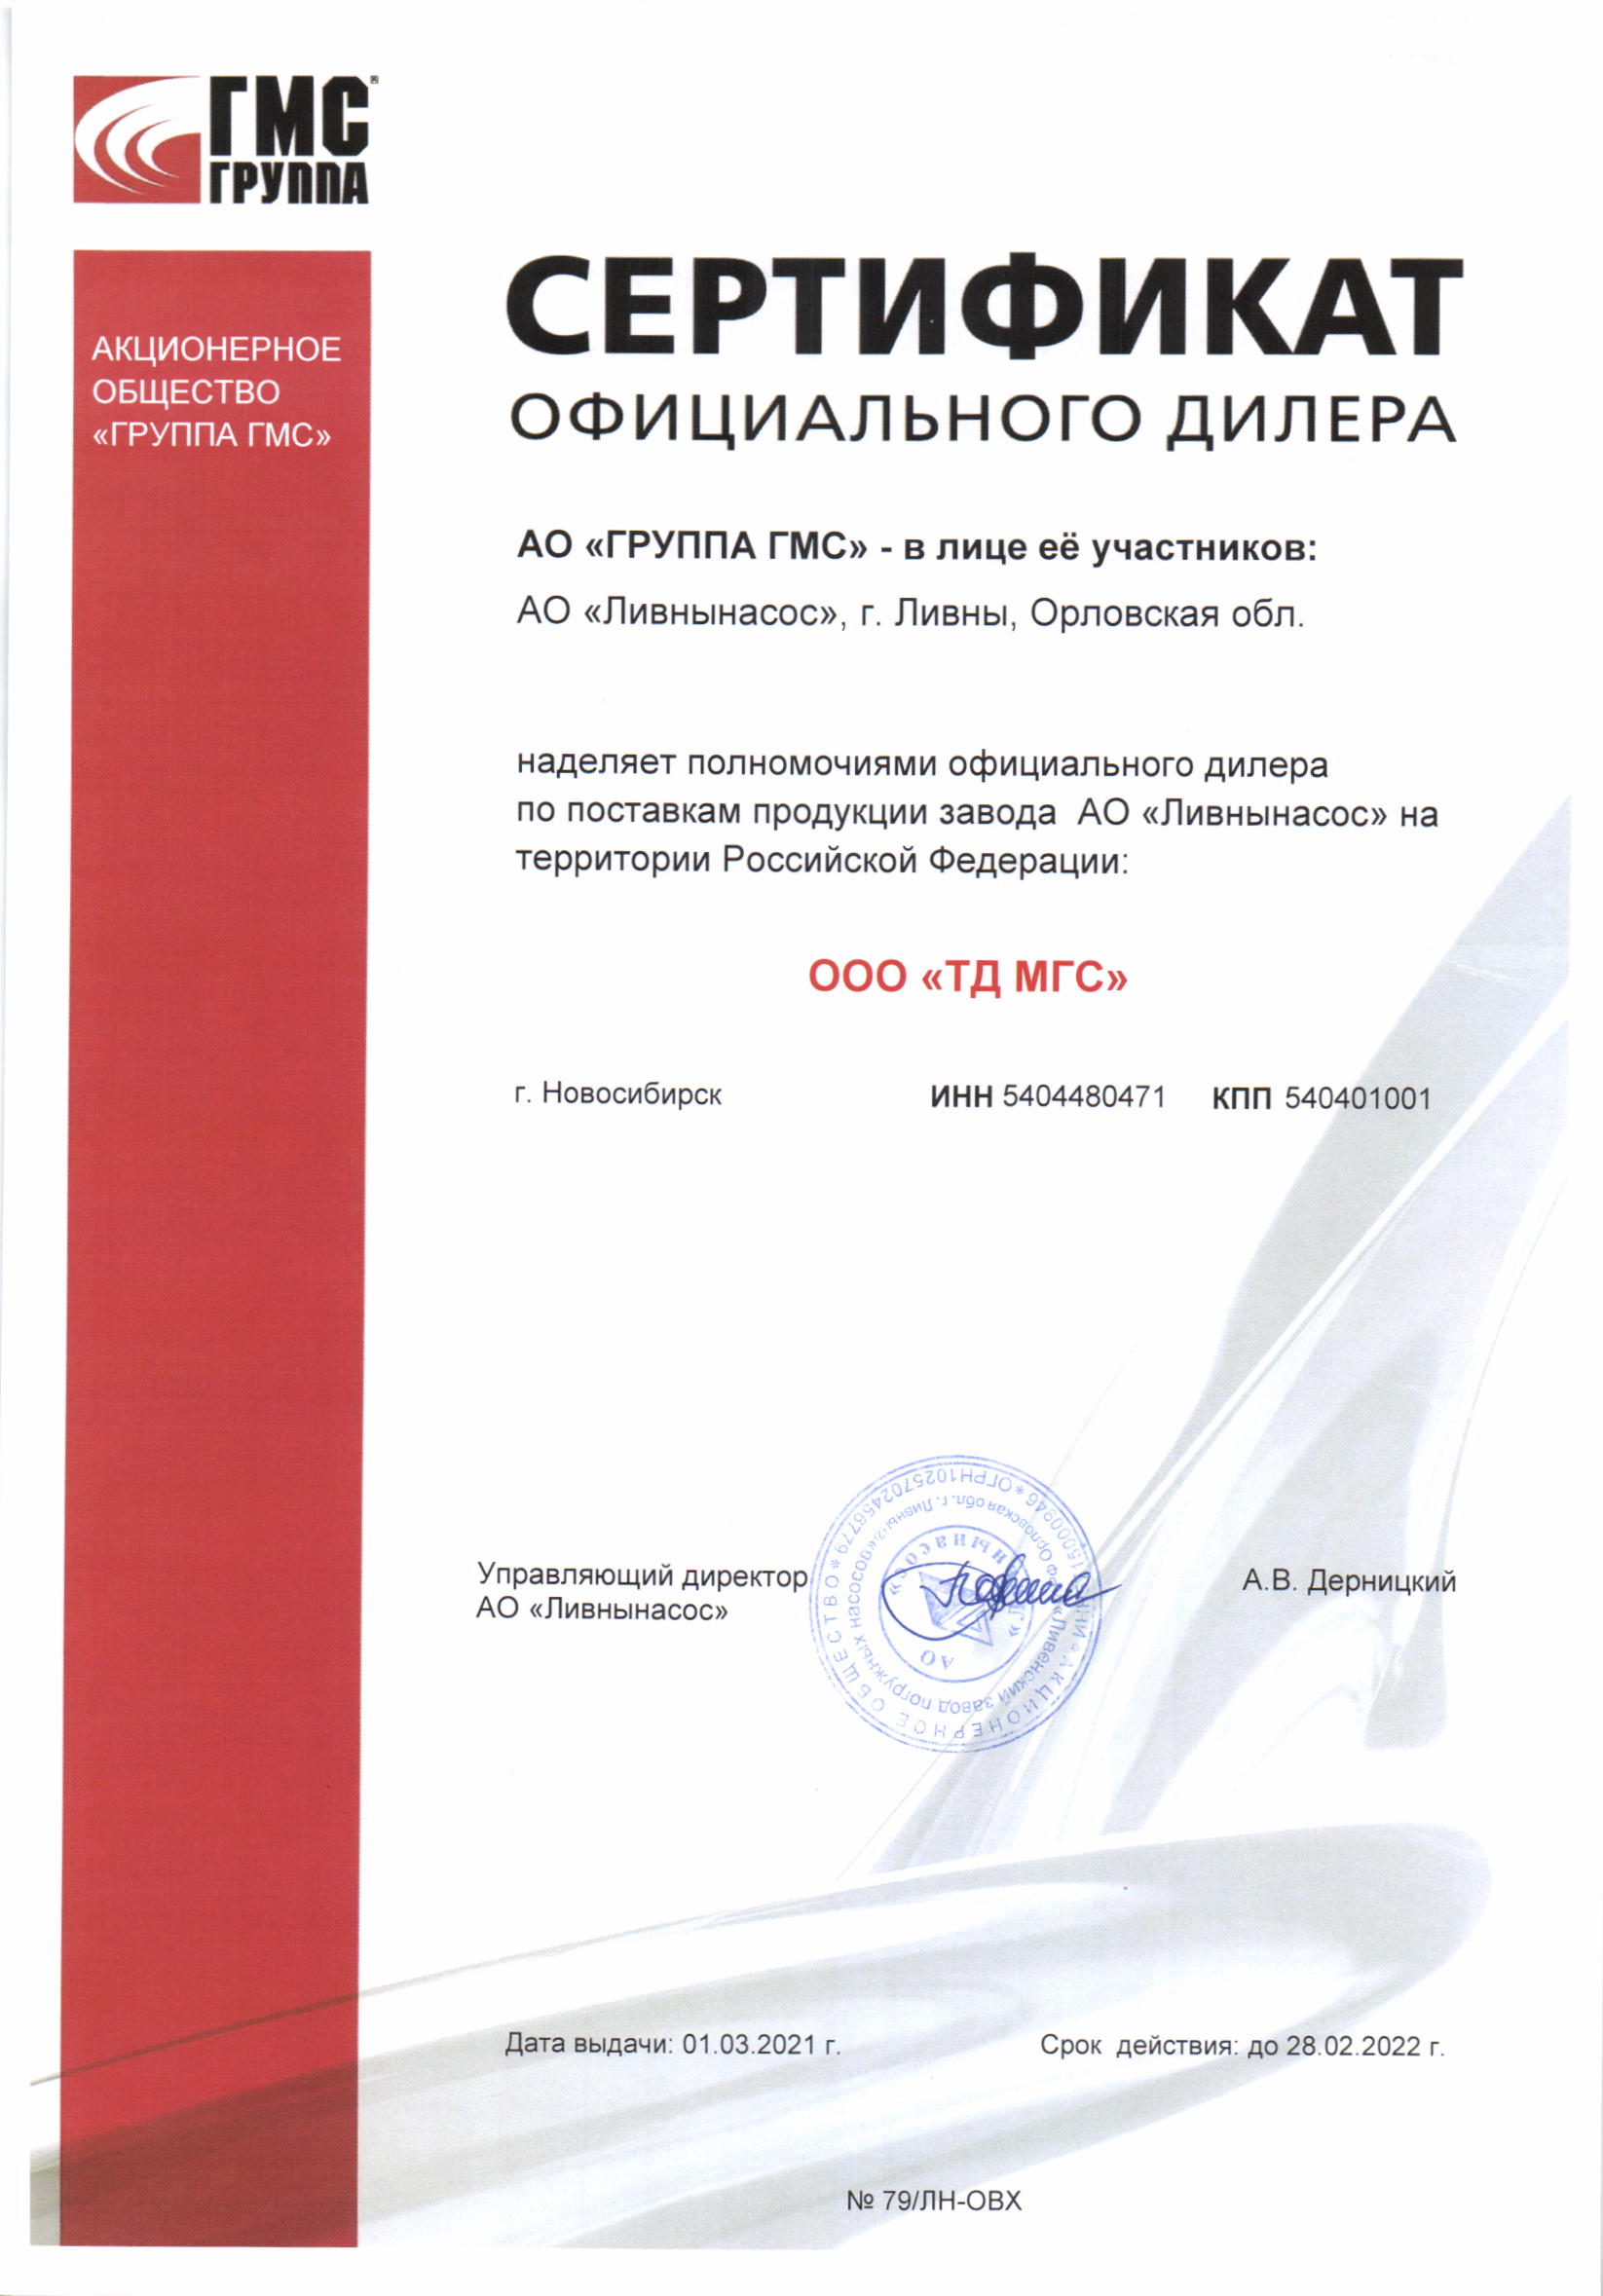 Сертификат дилера|Ливнынасос